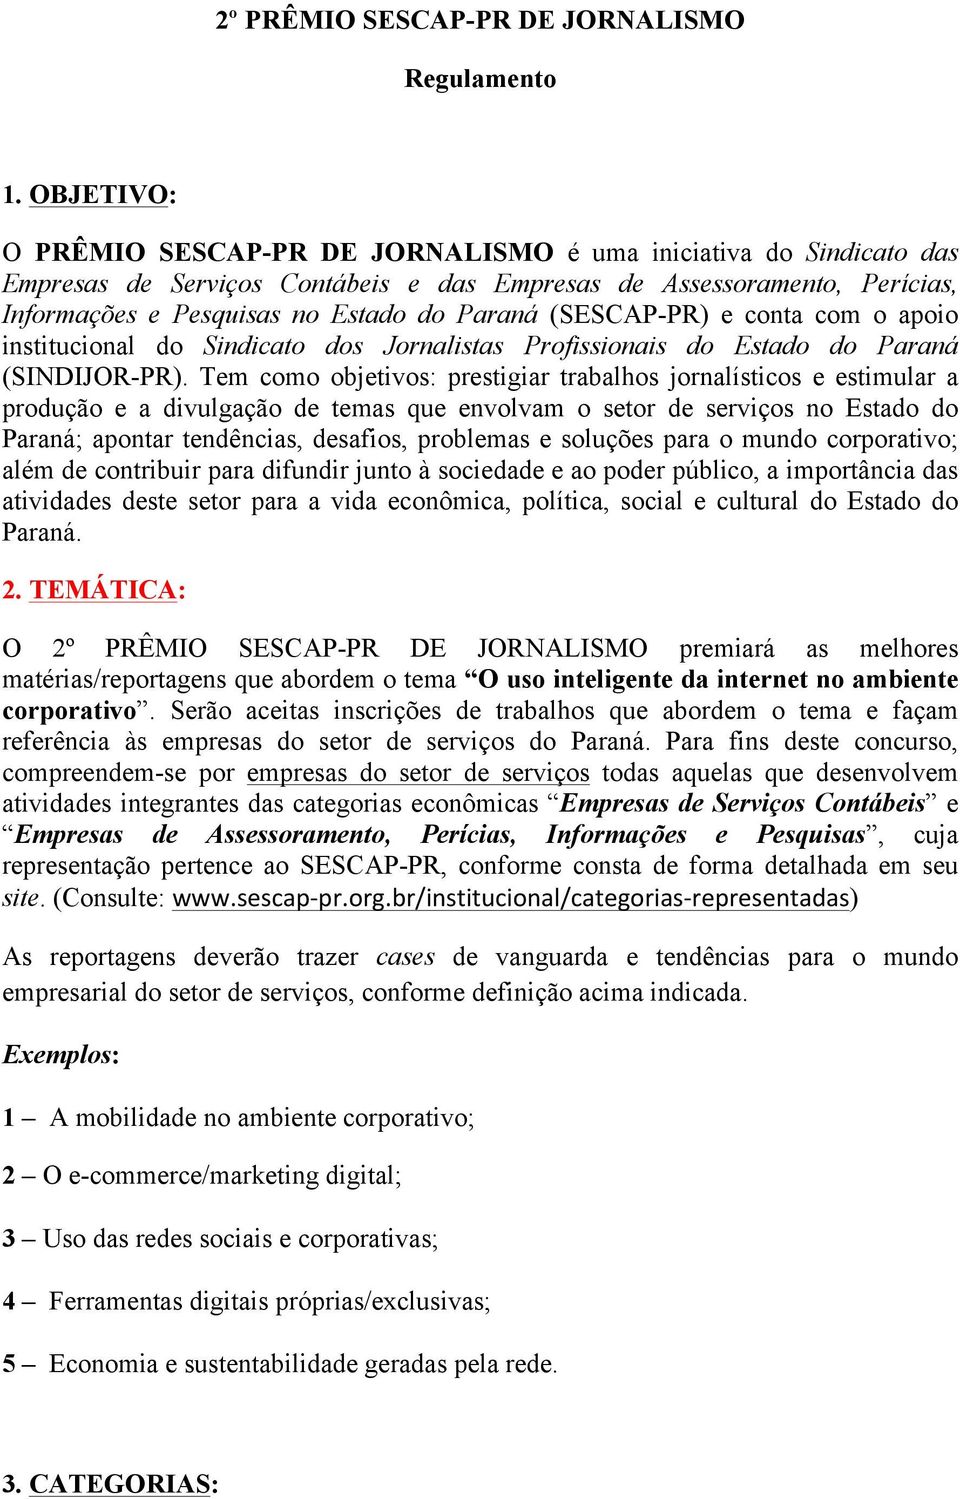 (SESCAP-PR) e conta com o apoio institucional do Sindicato dos Jornalistas Profissionais do Estado do Paraná (SINDIJOR-PR).